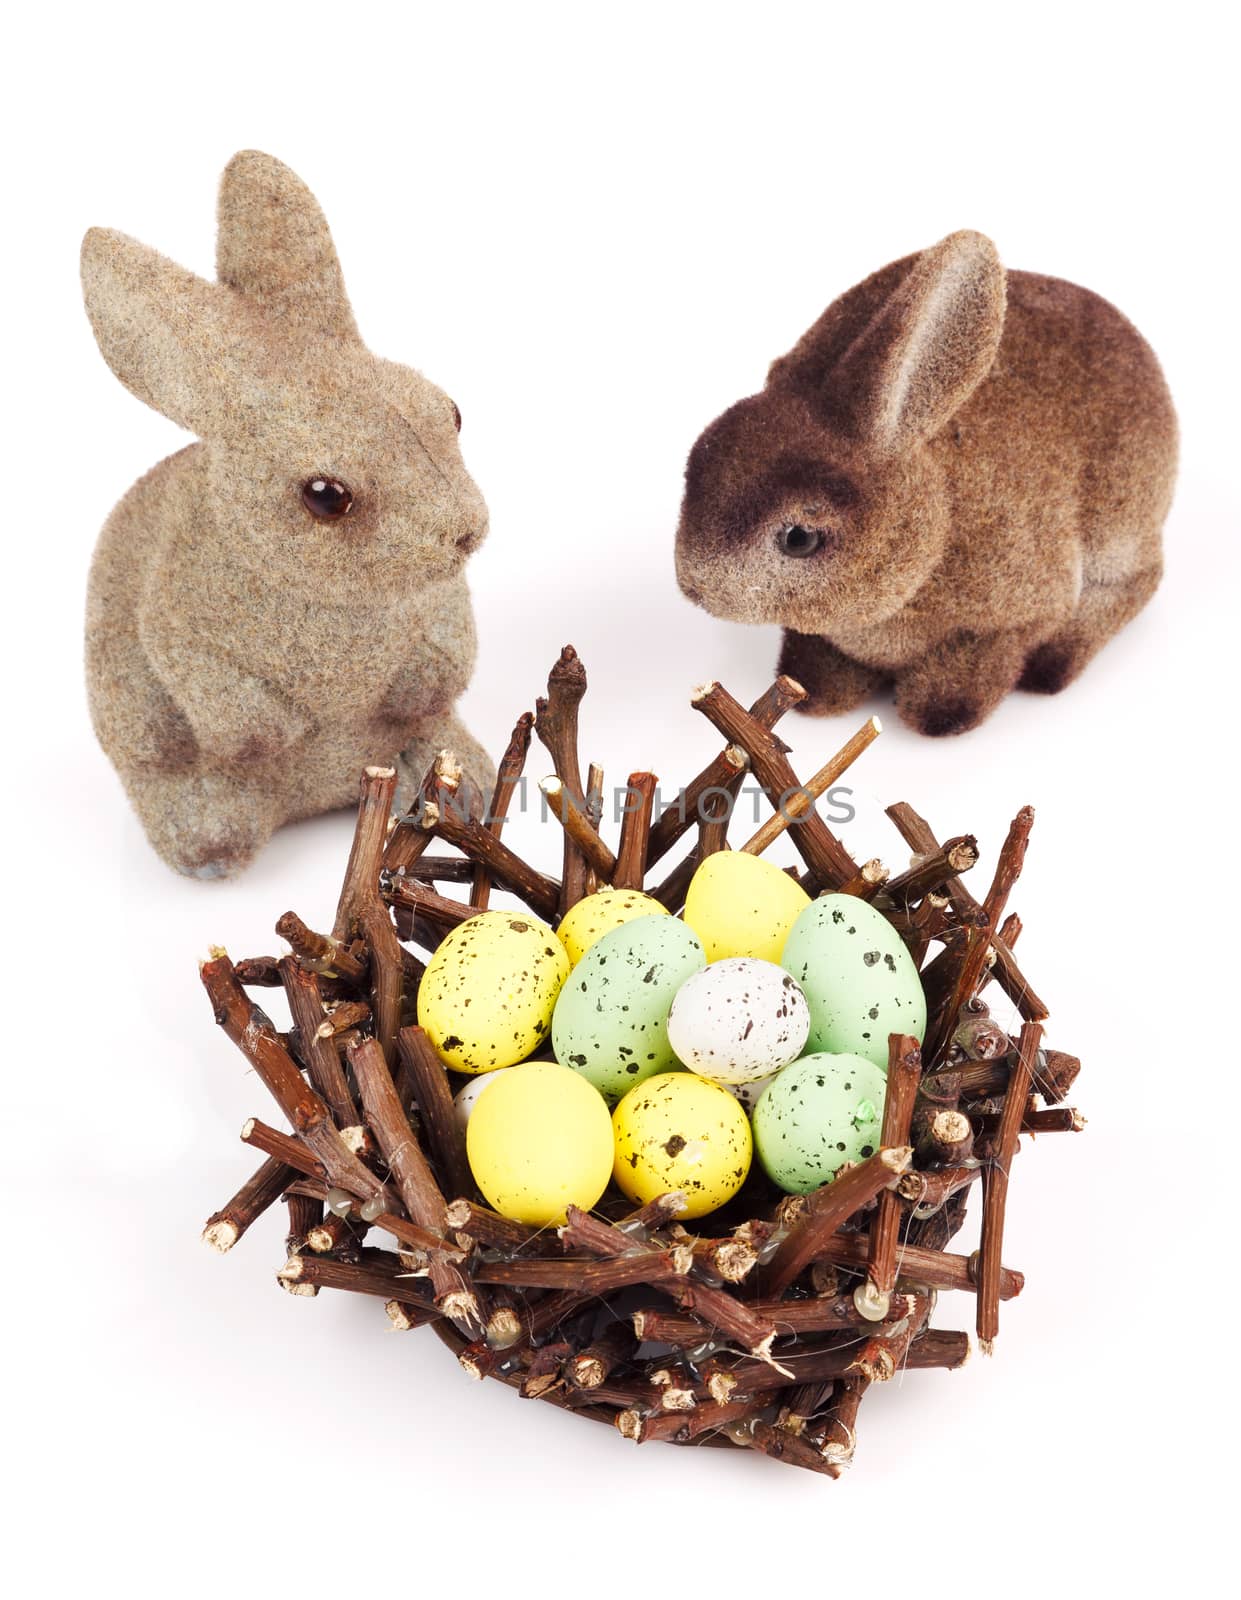 Easter bunnies by serkucher